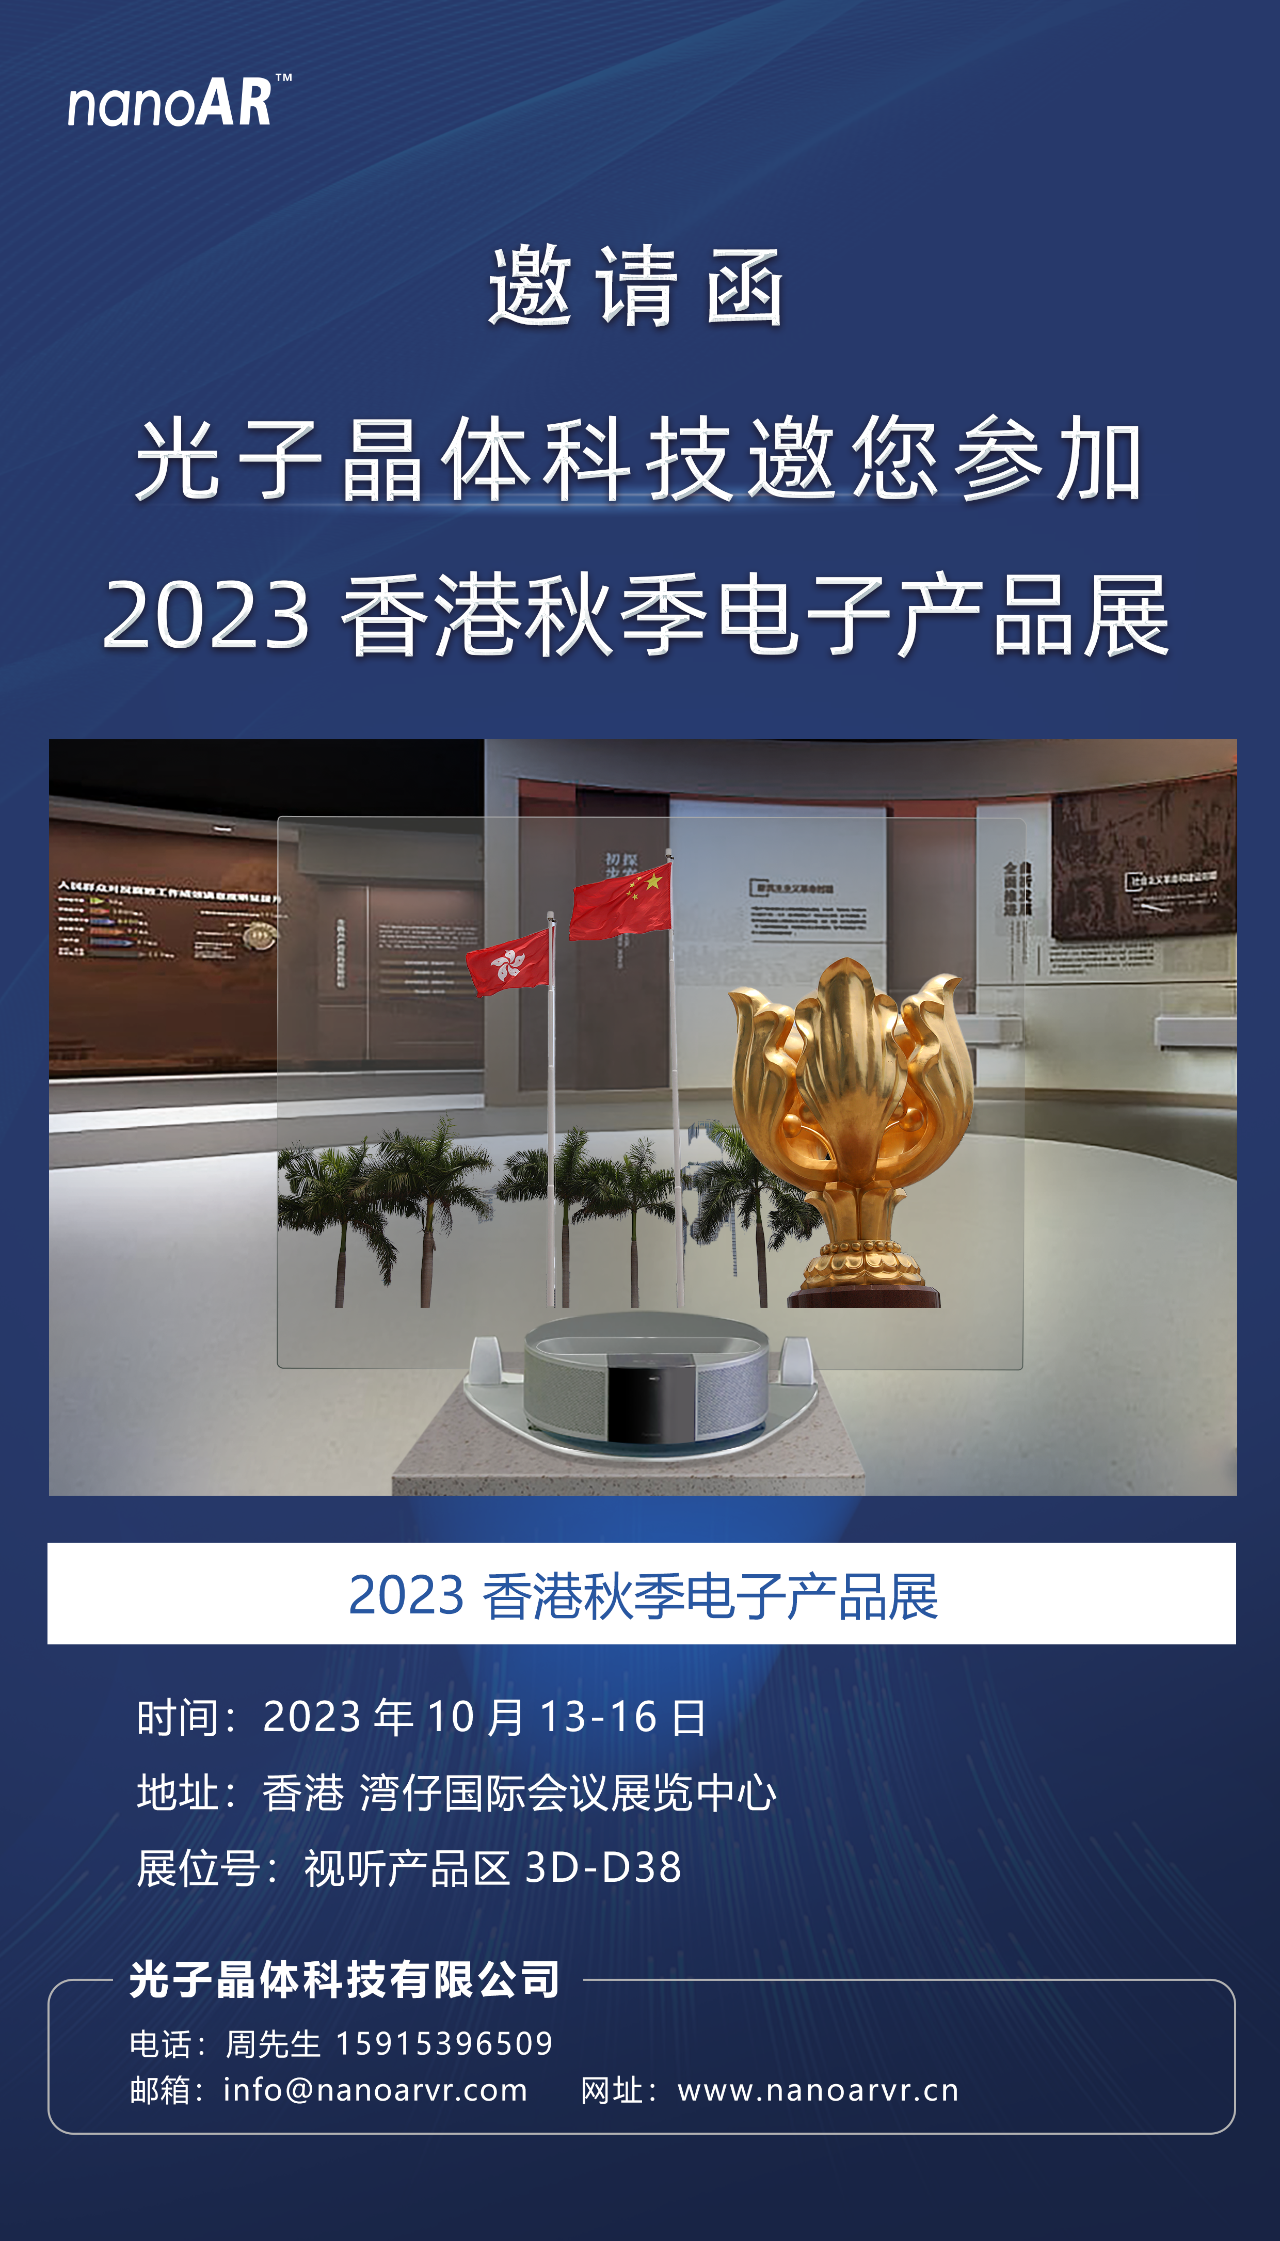 光子晶體科技邀請您參加「2023 香港秋季電子產品展」